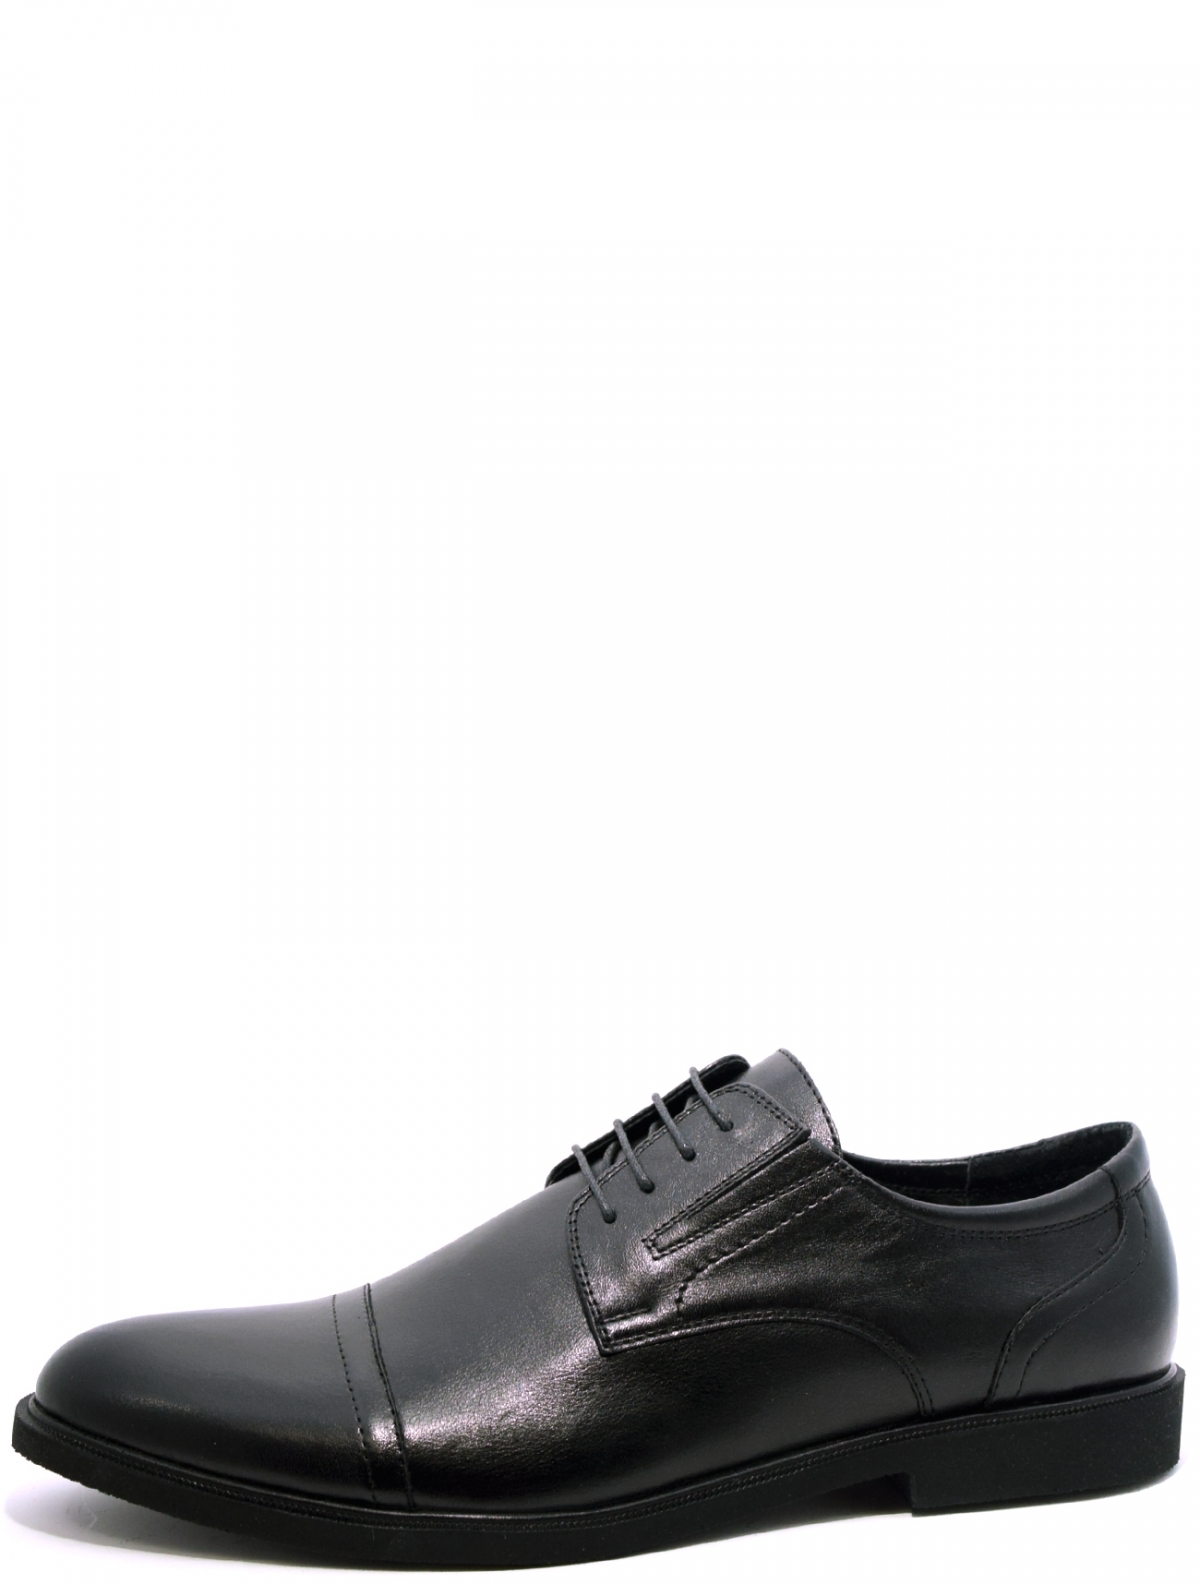 EDERRO 748-1 мужские туфли